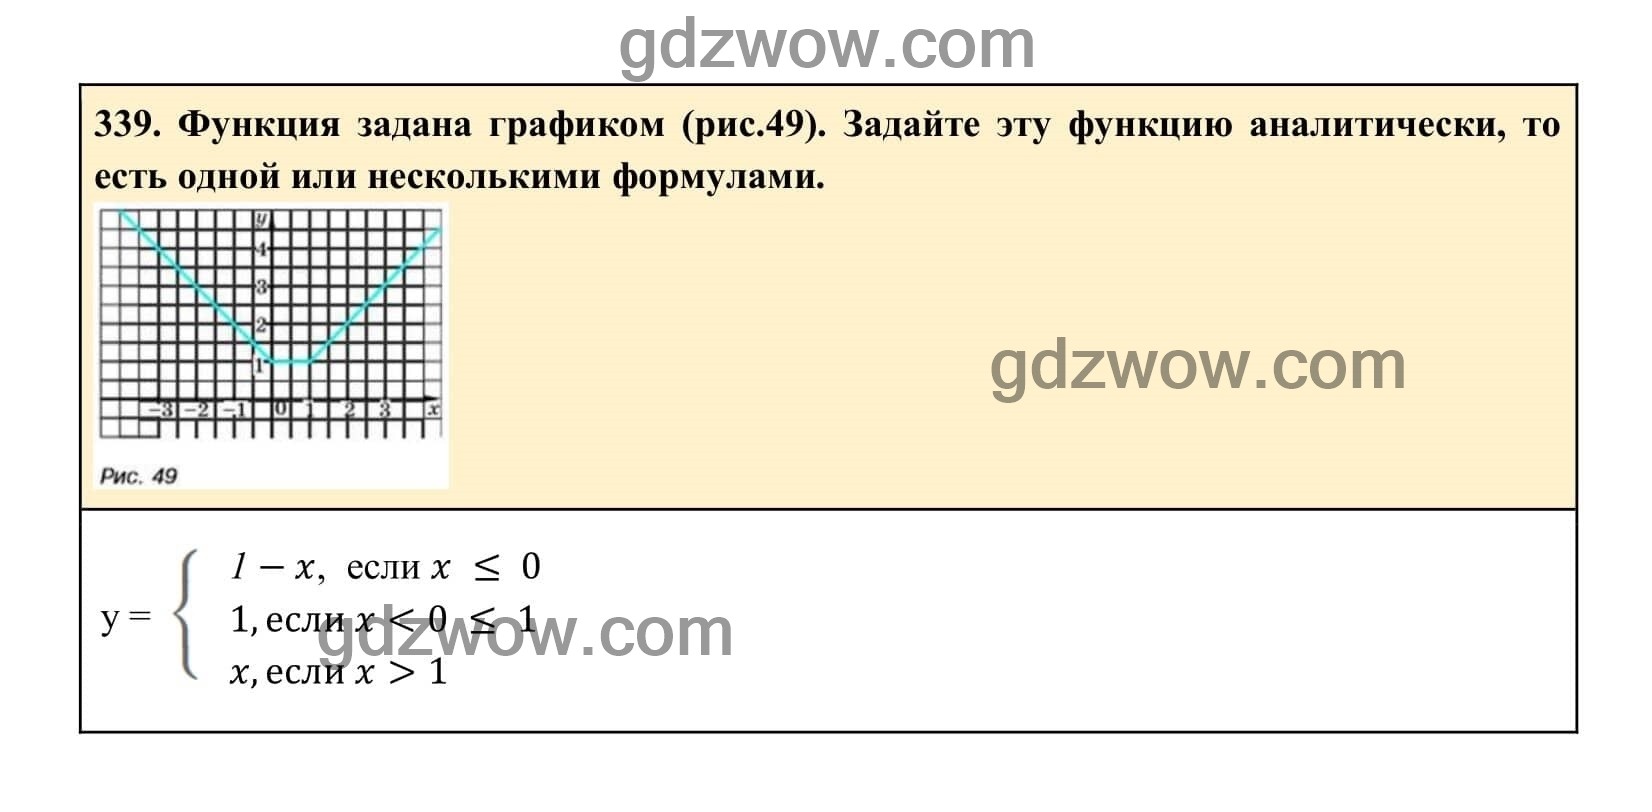 Упражнение 339 - ГДЗ по Алгебре 7 класс Учебник Макарычев (решебник) - GDZwow